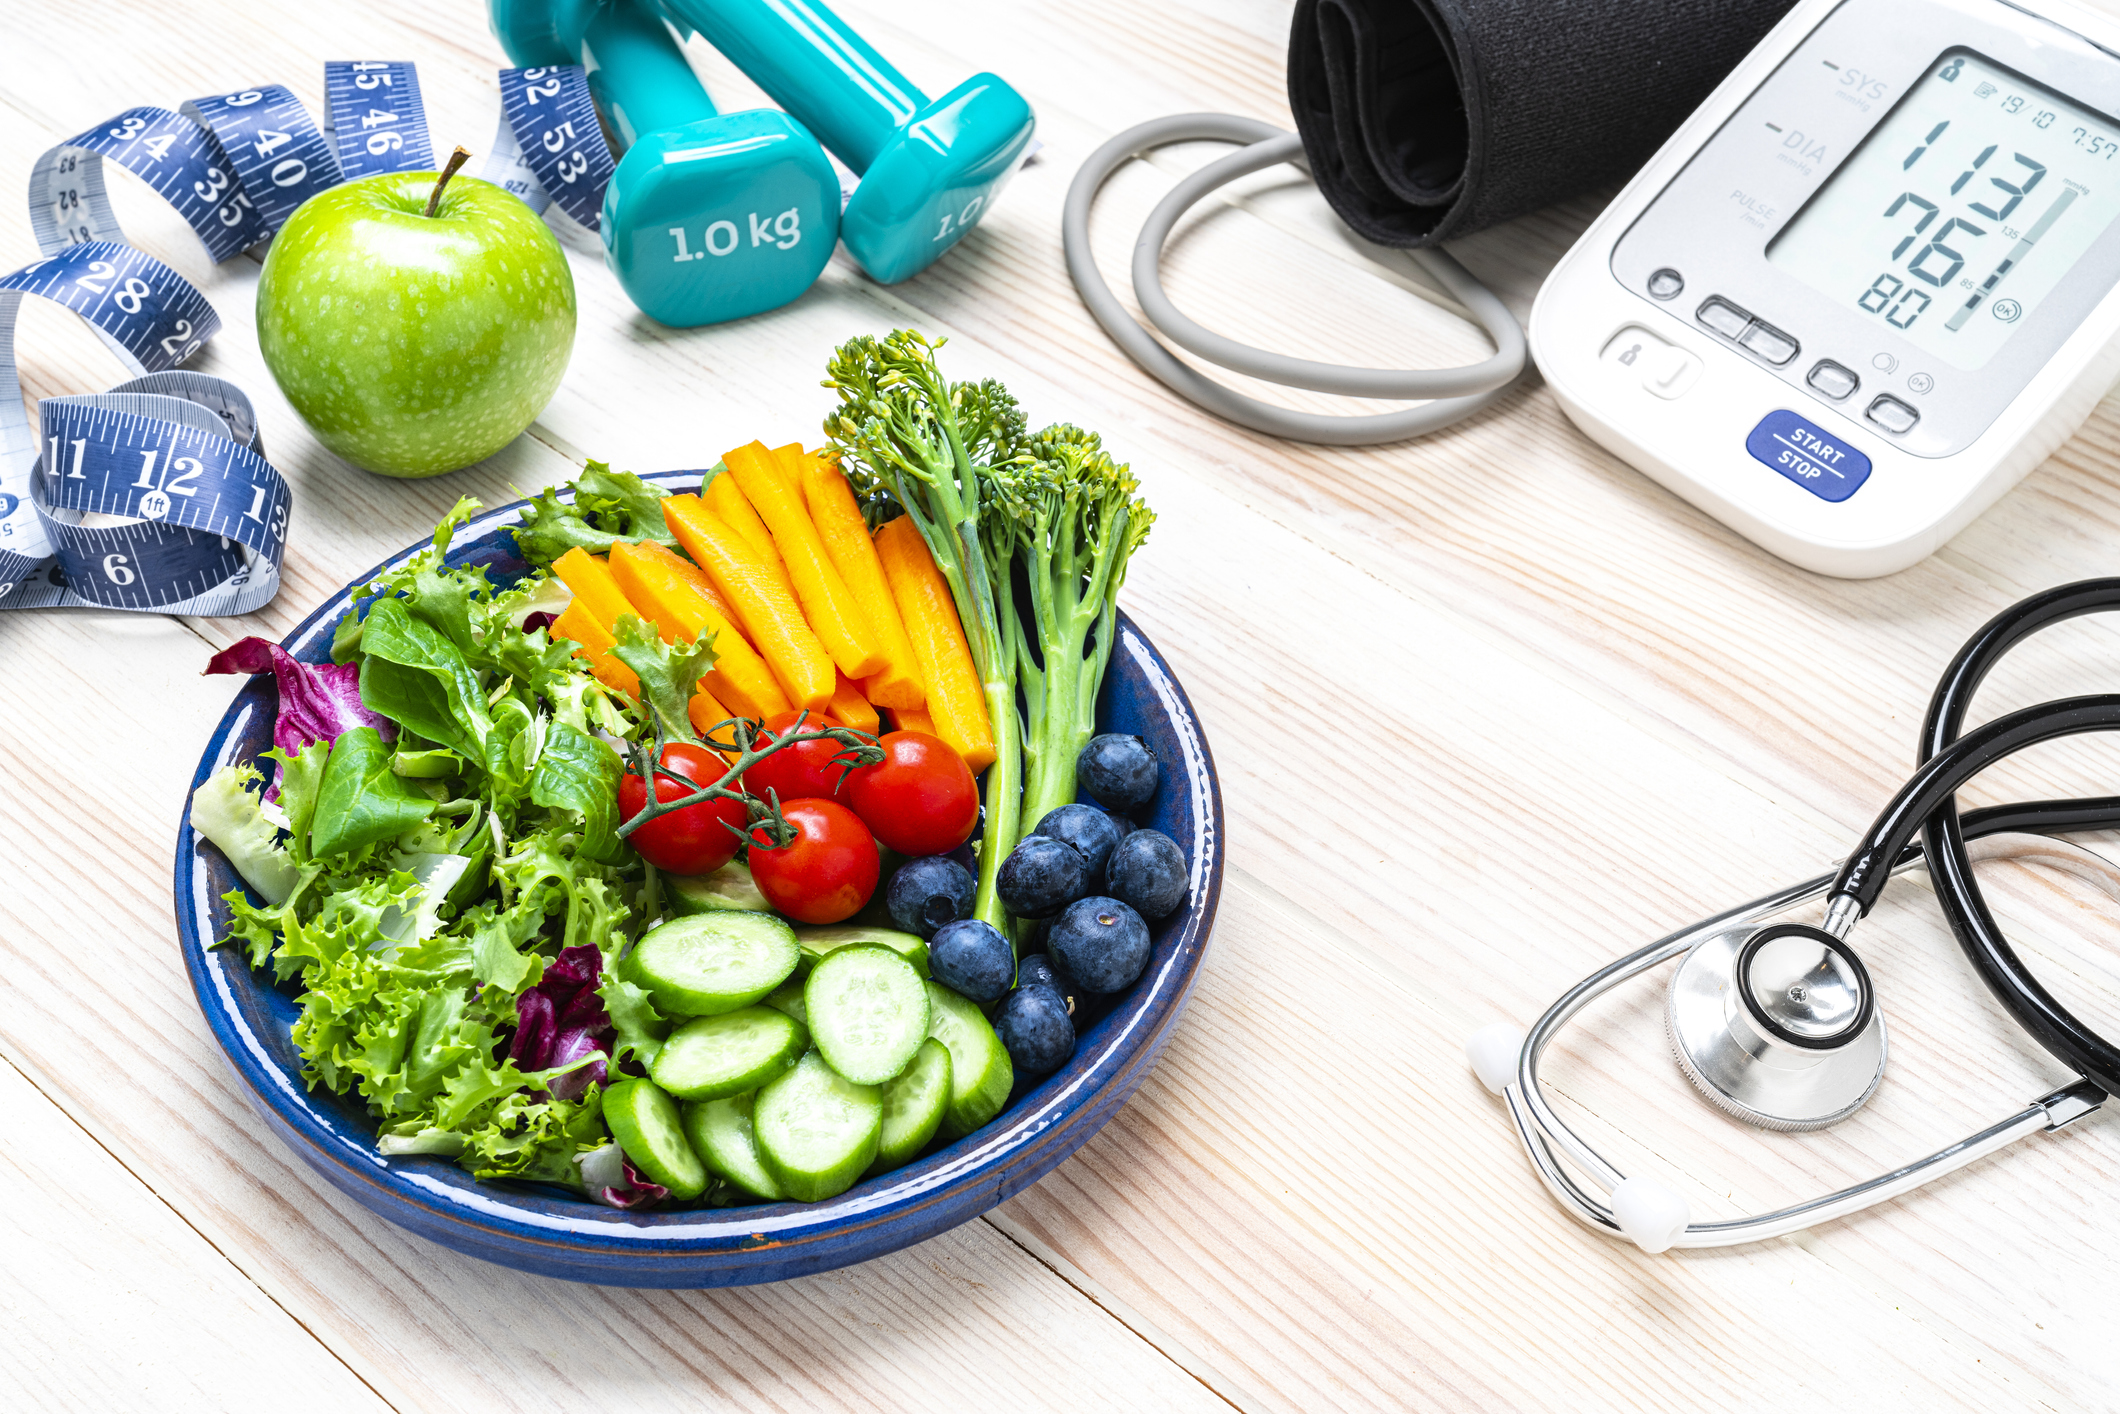 Egy tál zöldség hever az asztalon. Mellette egy vérnyomásmérő és edzéshez való súlyok vannak odakészítve.